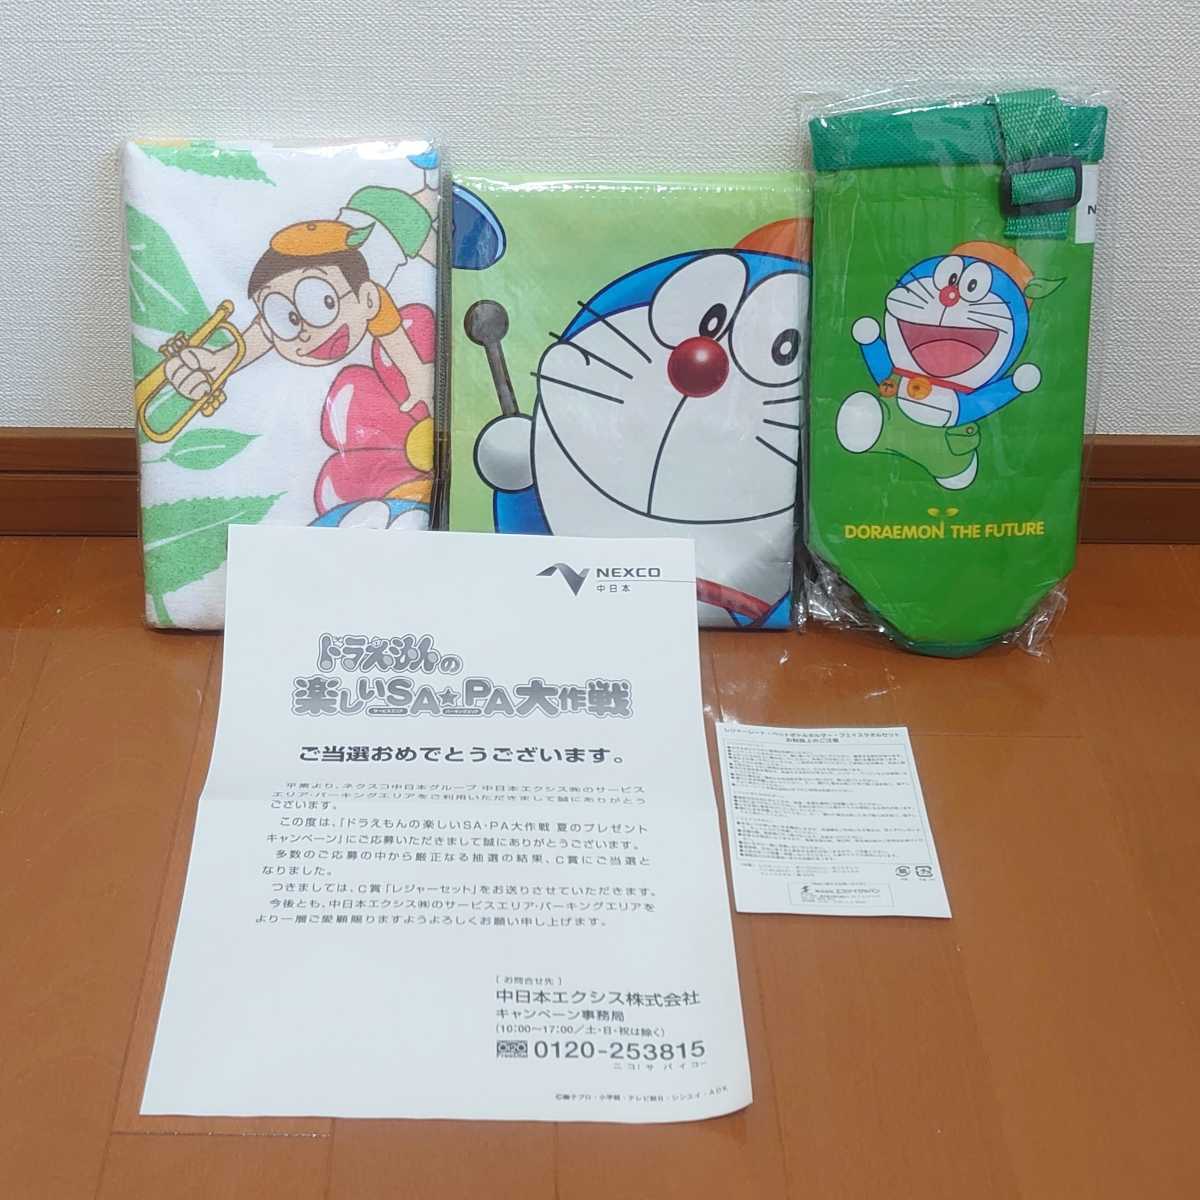 ★お求めやすく価格改定★ 特別送料無料 Doraemon ドラえもん NEXCO ネクスコ 中日本 楽しいSA☆PA大作戦 サービス パーキング グッズ レジャー タオル シート セット tnp-21x688 emilymall.me emilymall.me